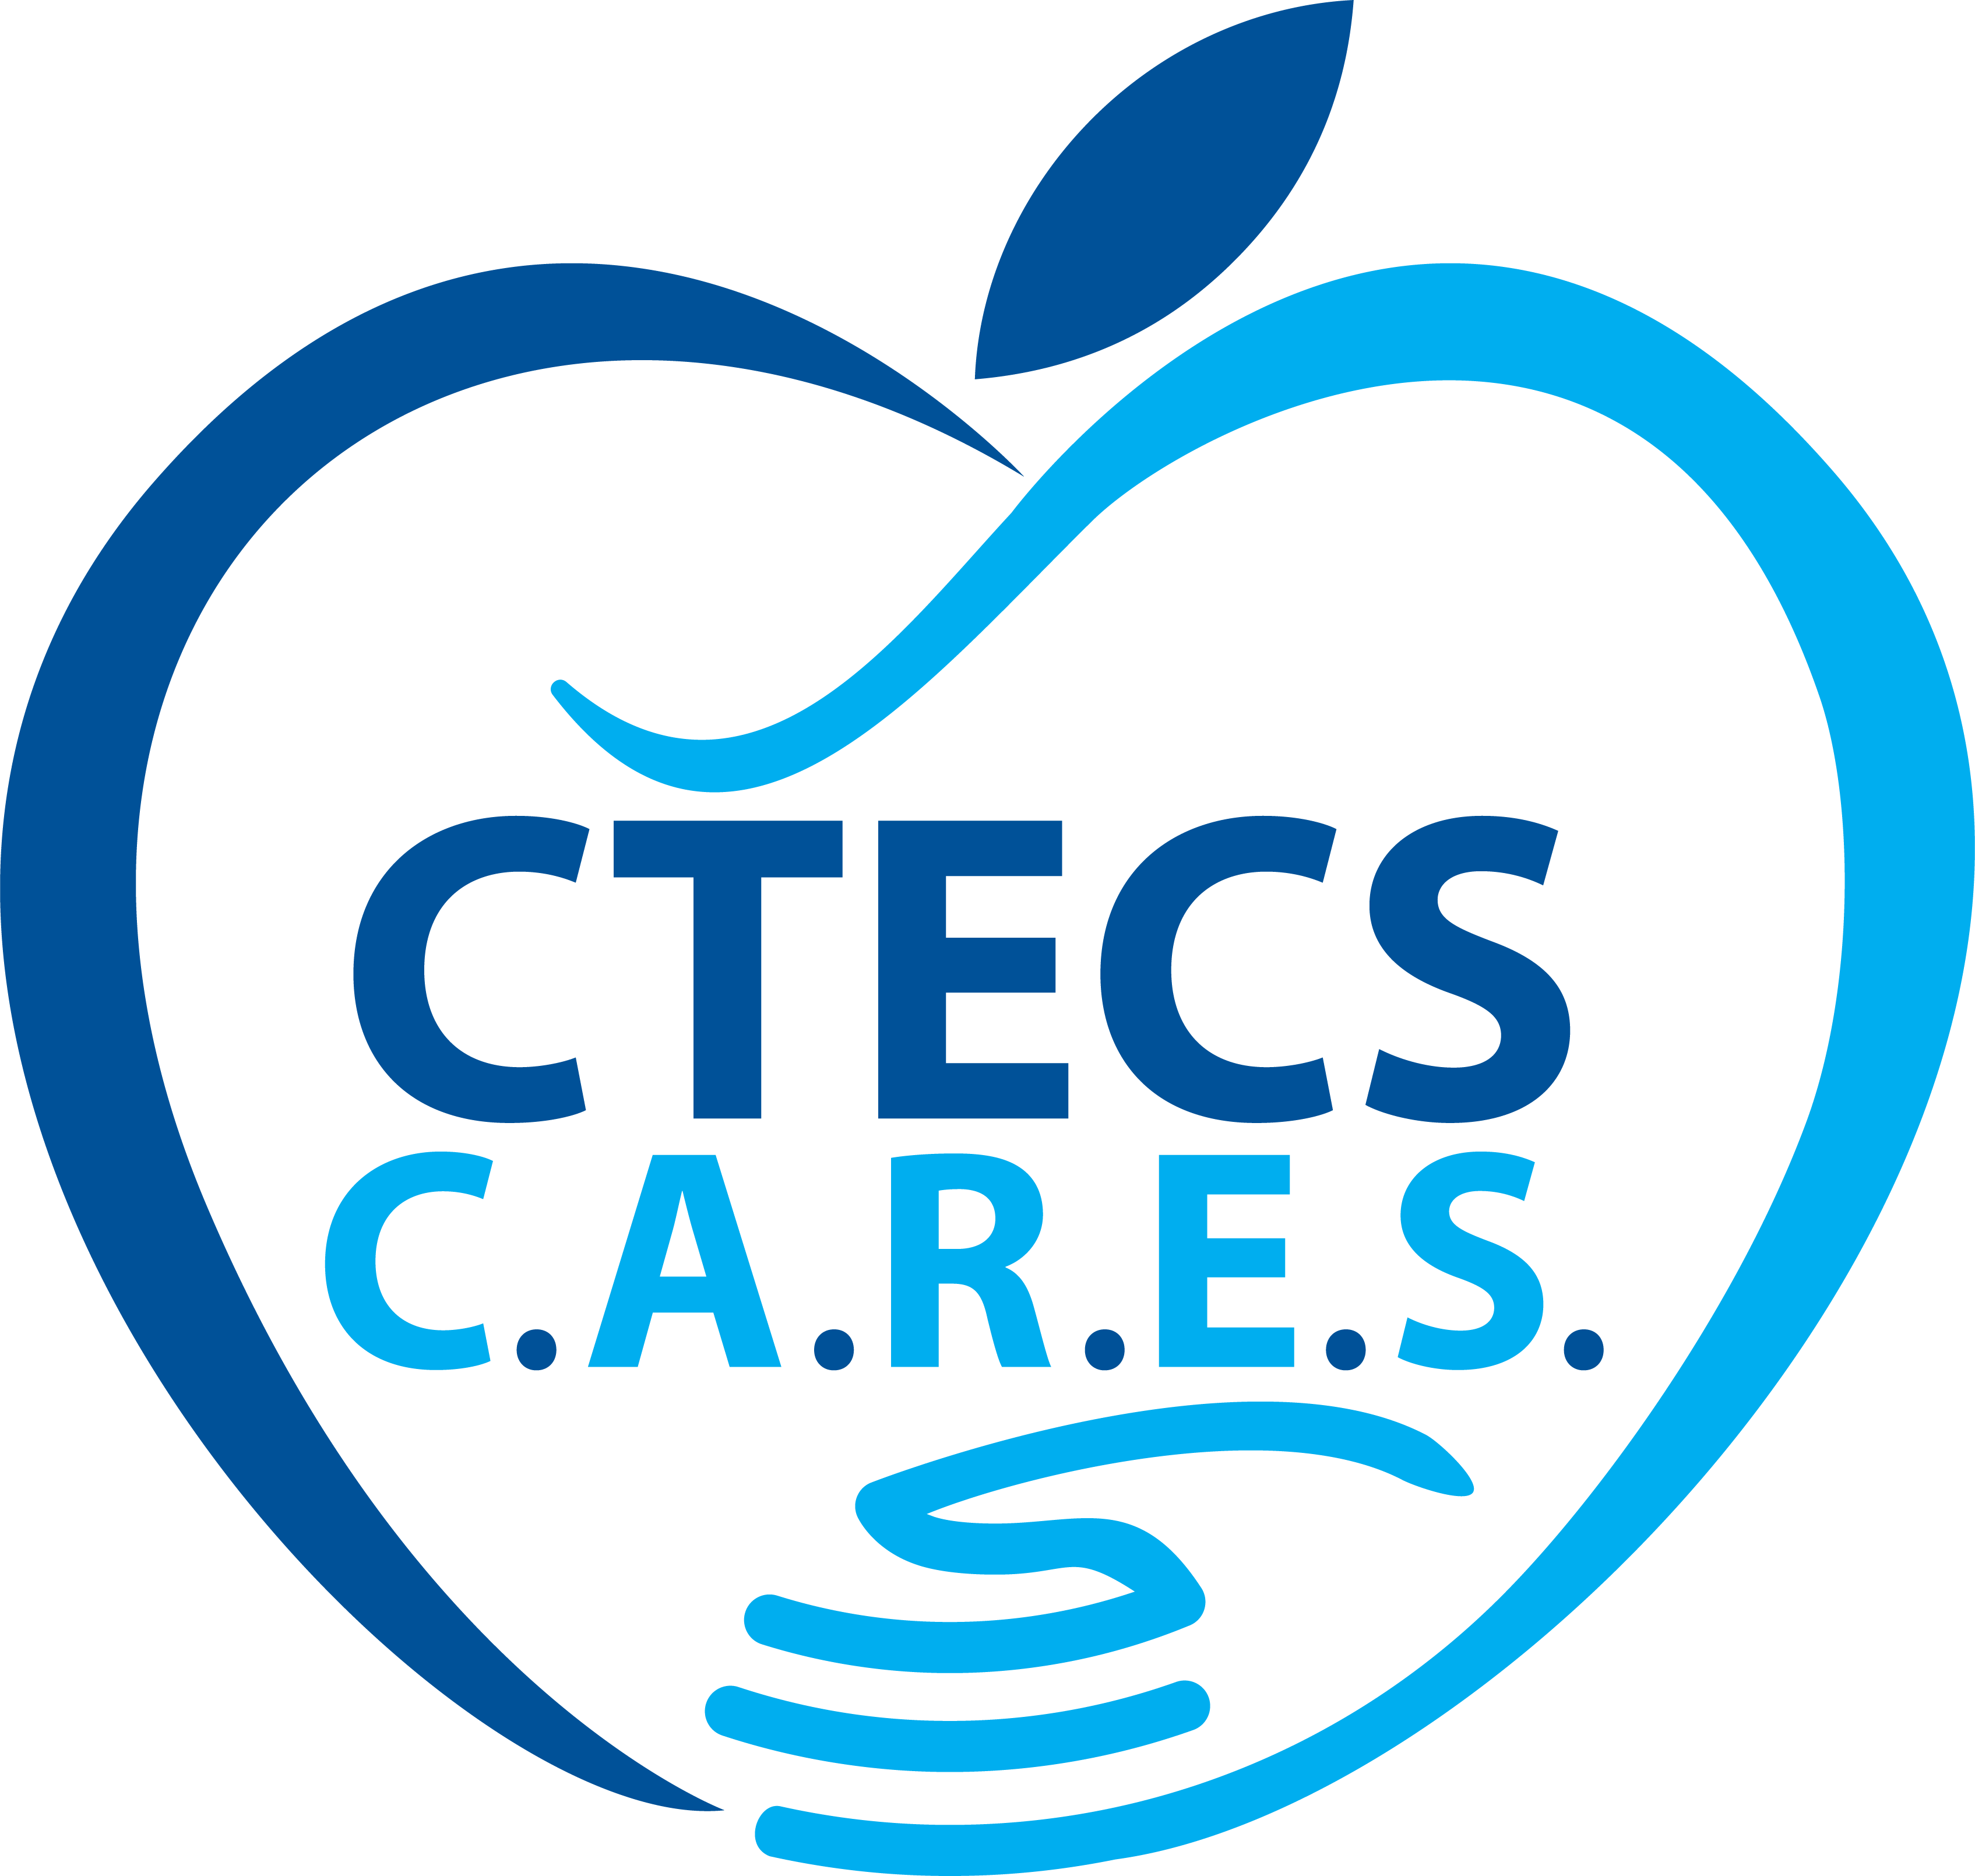 CTECS CARES logo